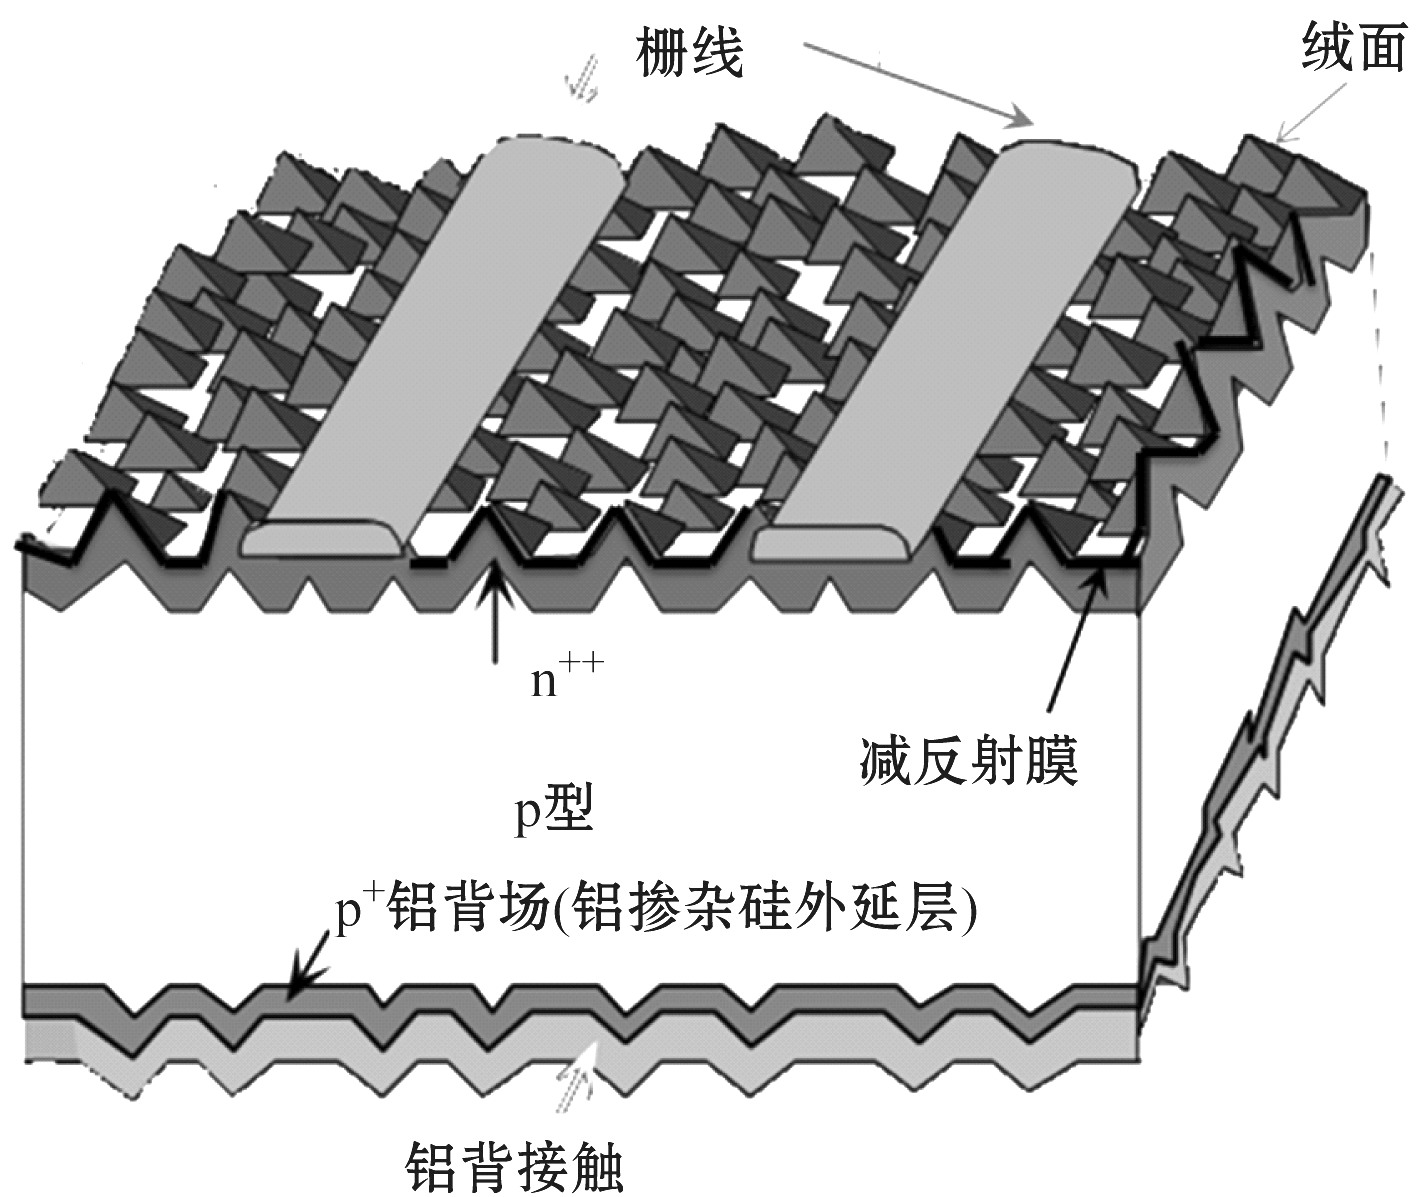 4.2.1 晶体硅太阳电池基本构成、功能与工艺概述